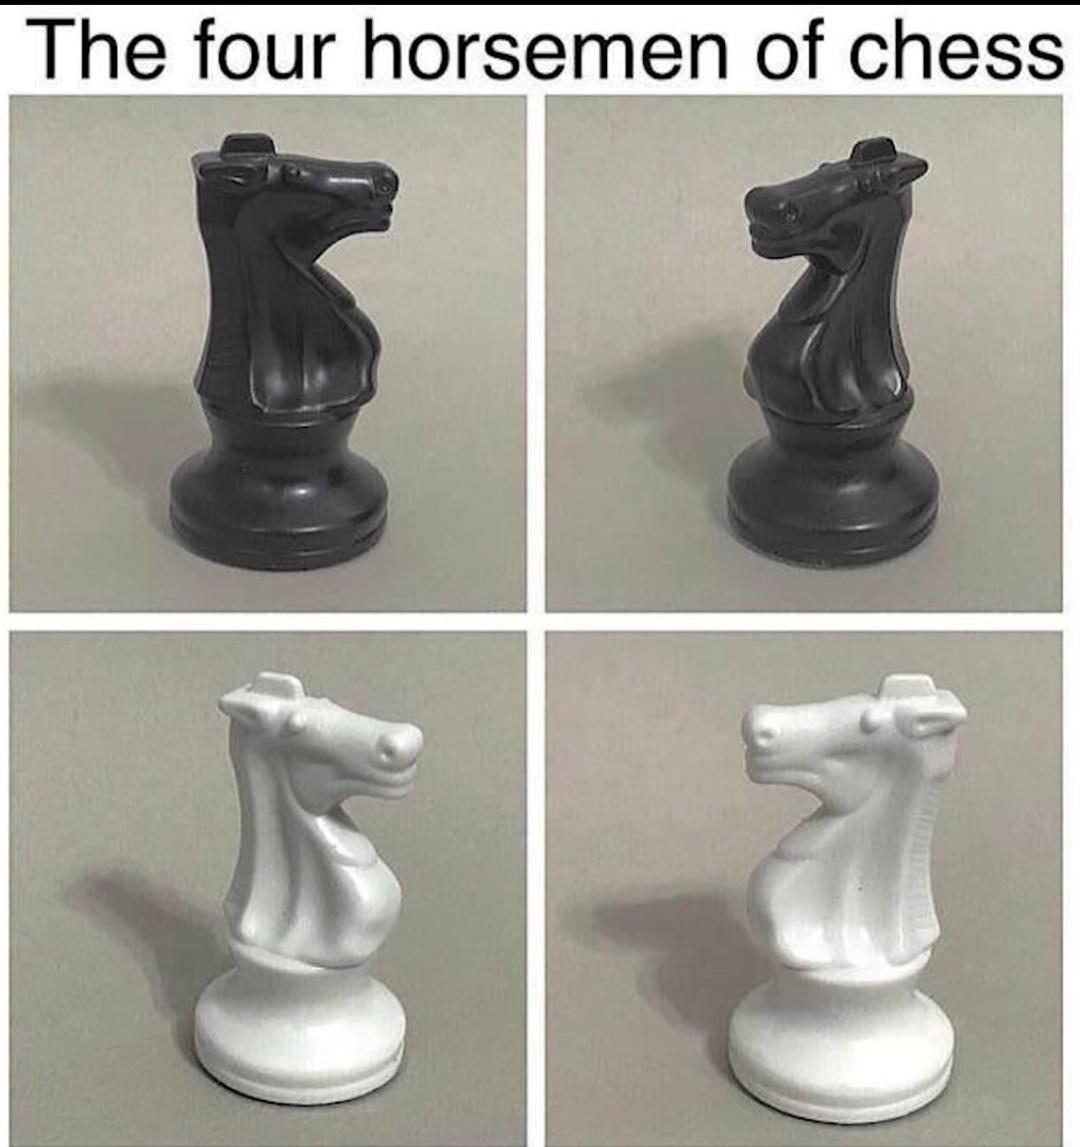 dank memes - funny memes - four horsemen of chess meme - The four horsemen of chess